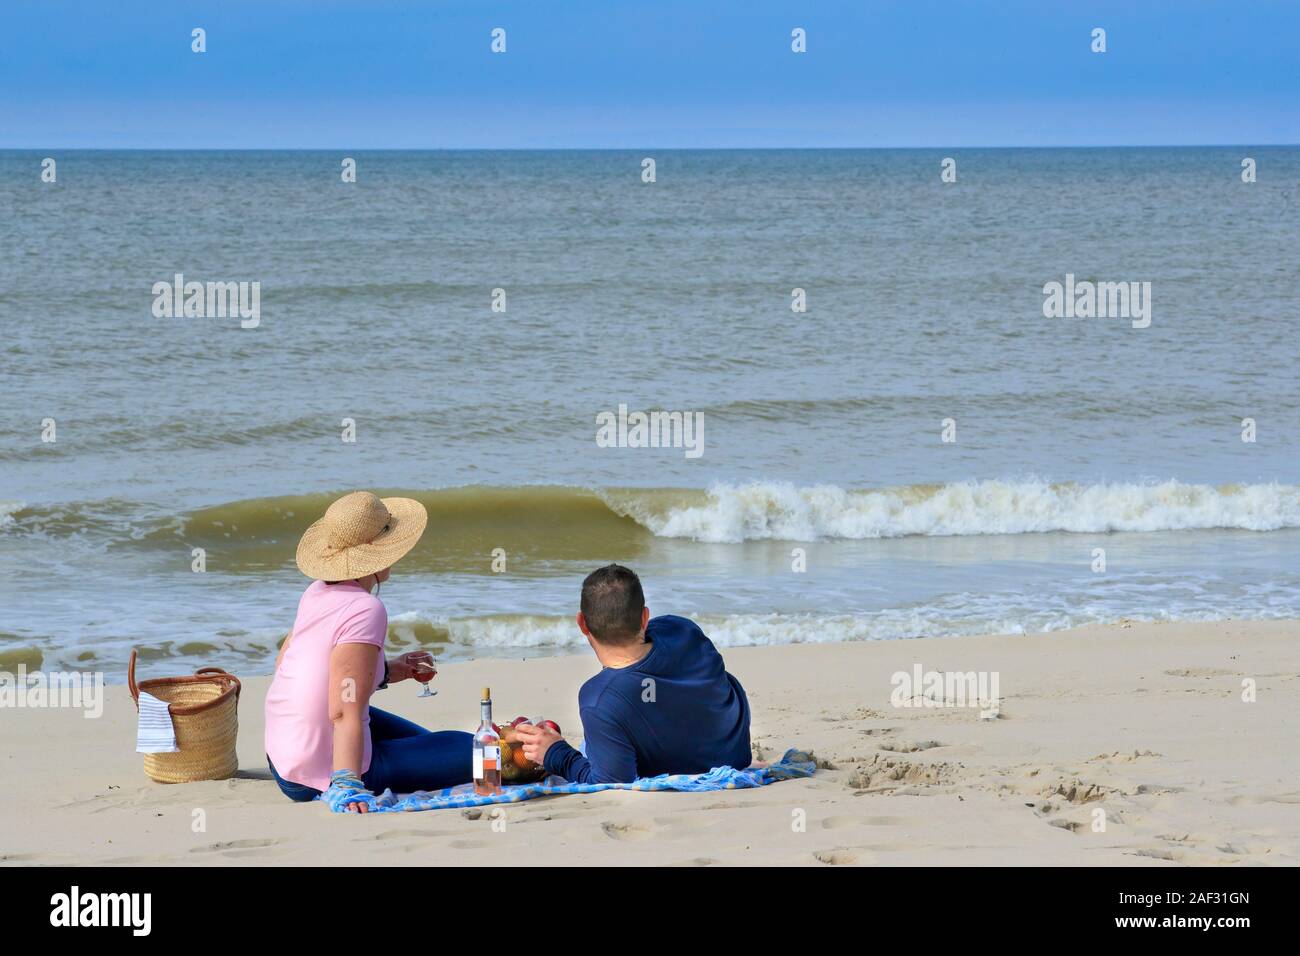 Giovane seduto su una spiaggia e affacciato sul mare, avente un picnic Foto Stock